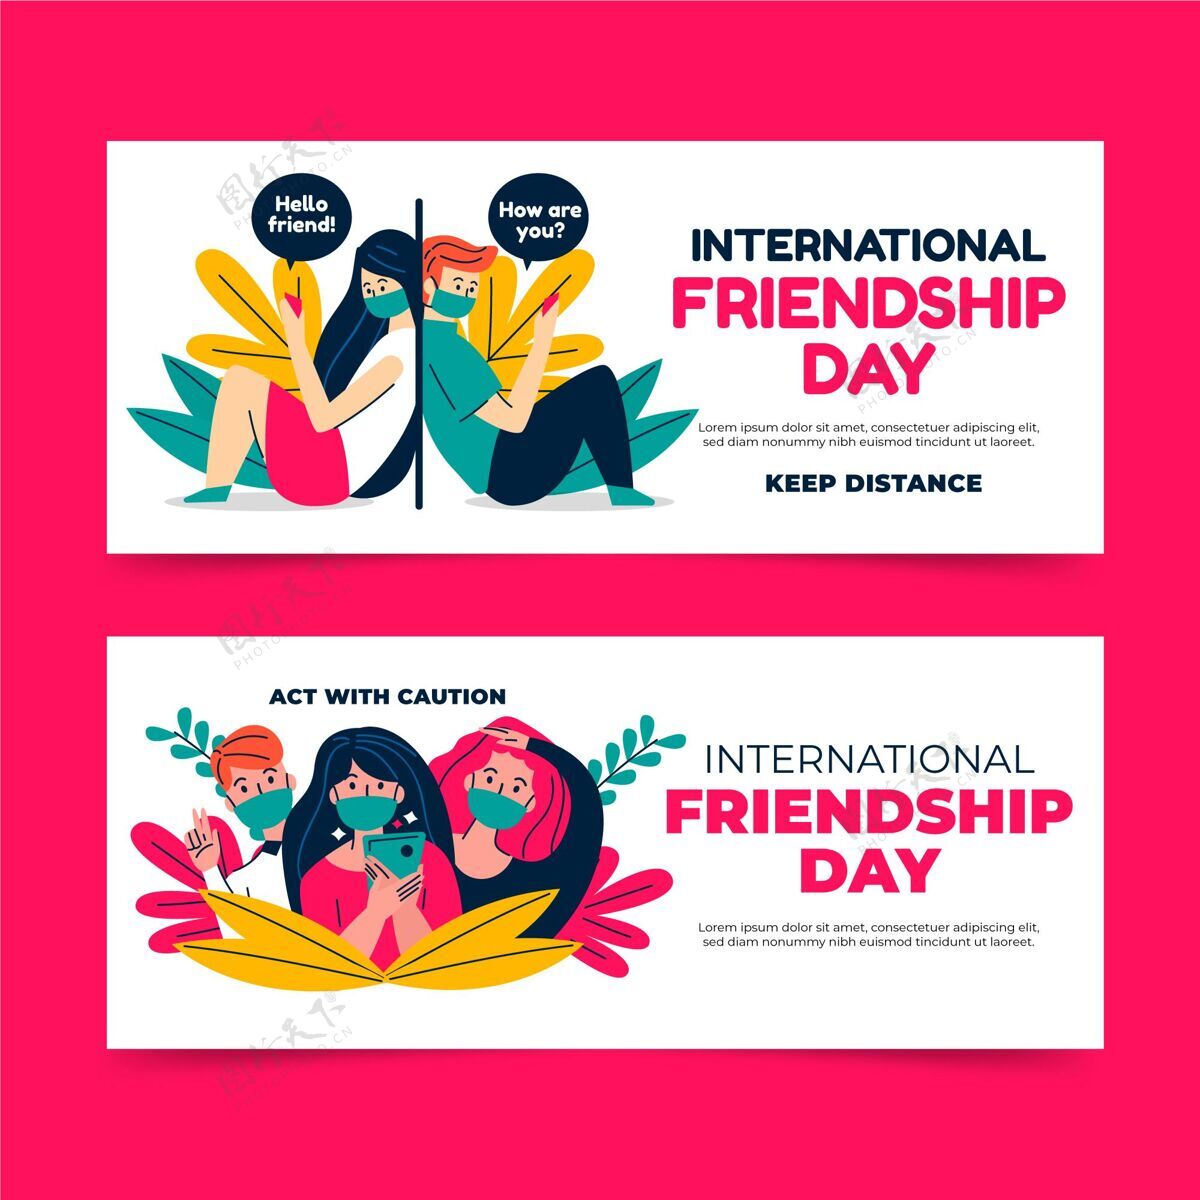 友谊国际友谊日横幅设置朋友友谊国际